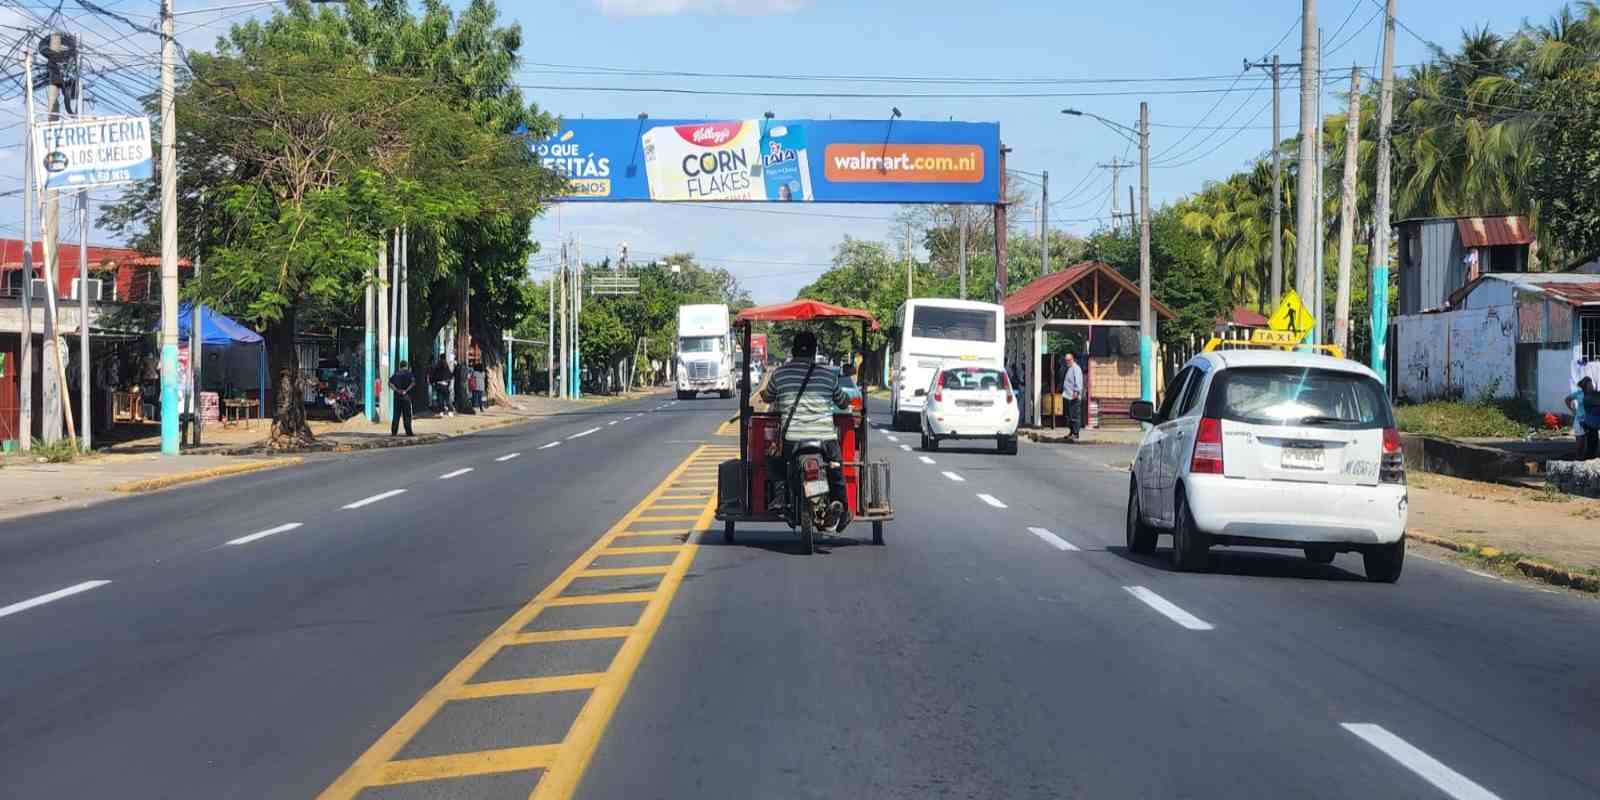 Las caponeras son uno de los medios de transporte más utilizados en los barrios de Managua y en varias ciudades del país.